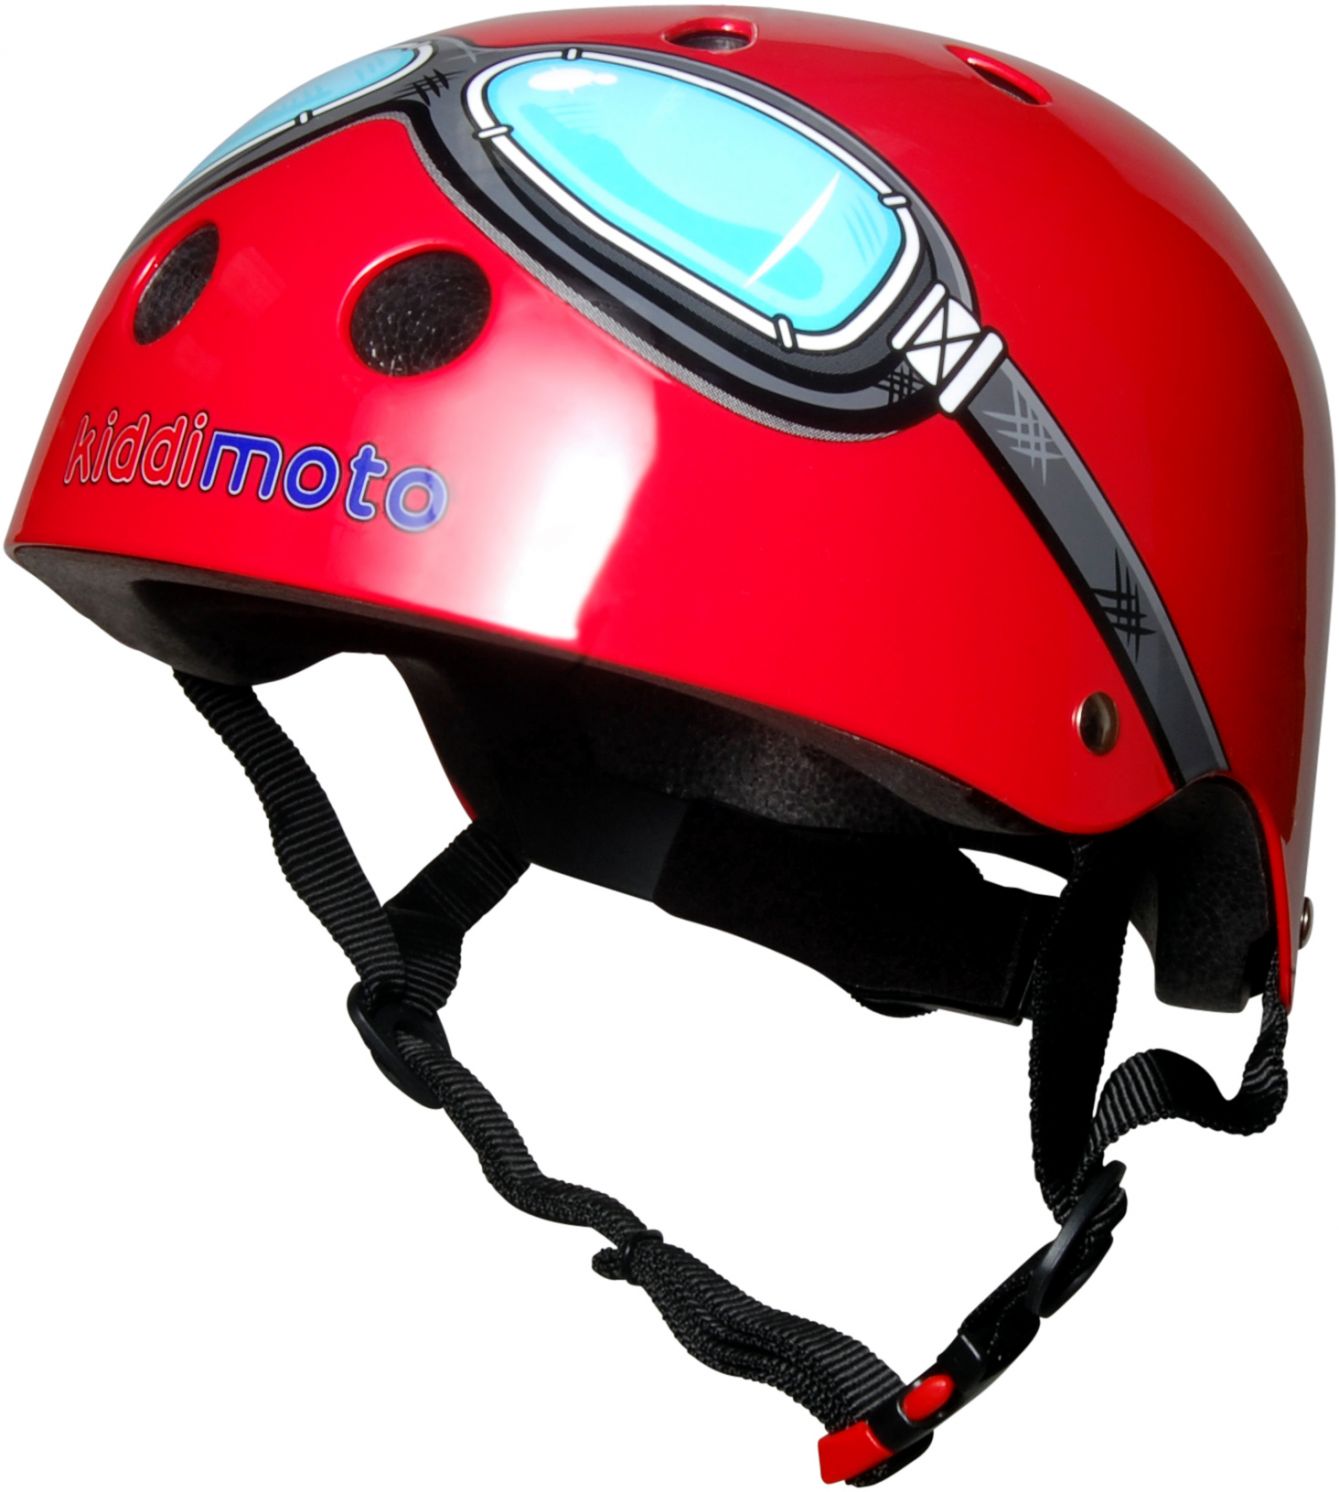 Шлем детский Kiddimoto очки пилота, красный, размер M 53-58см фото 1